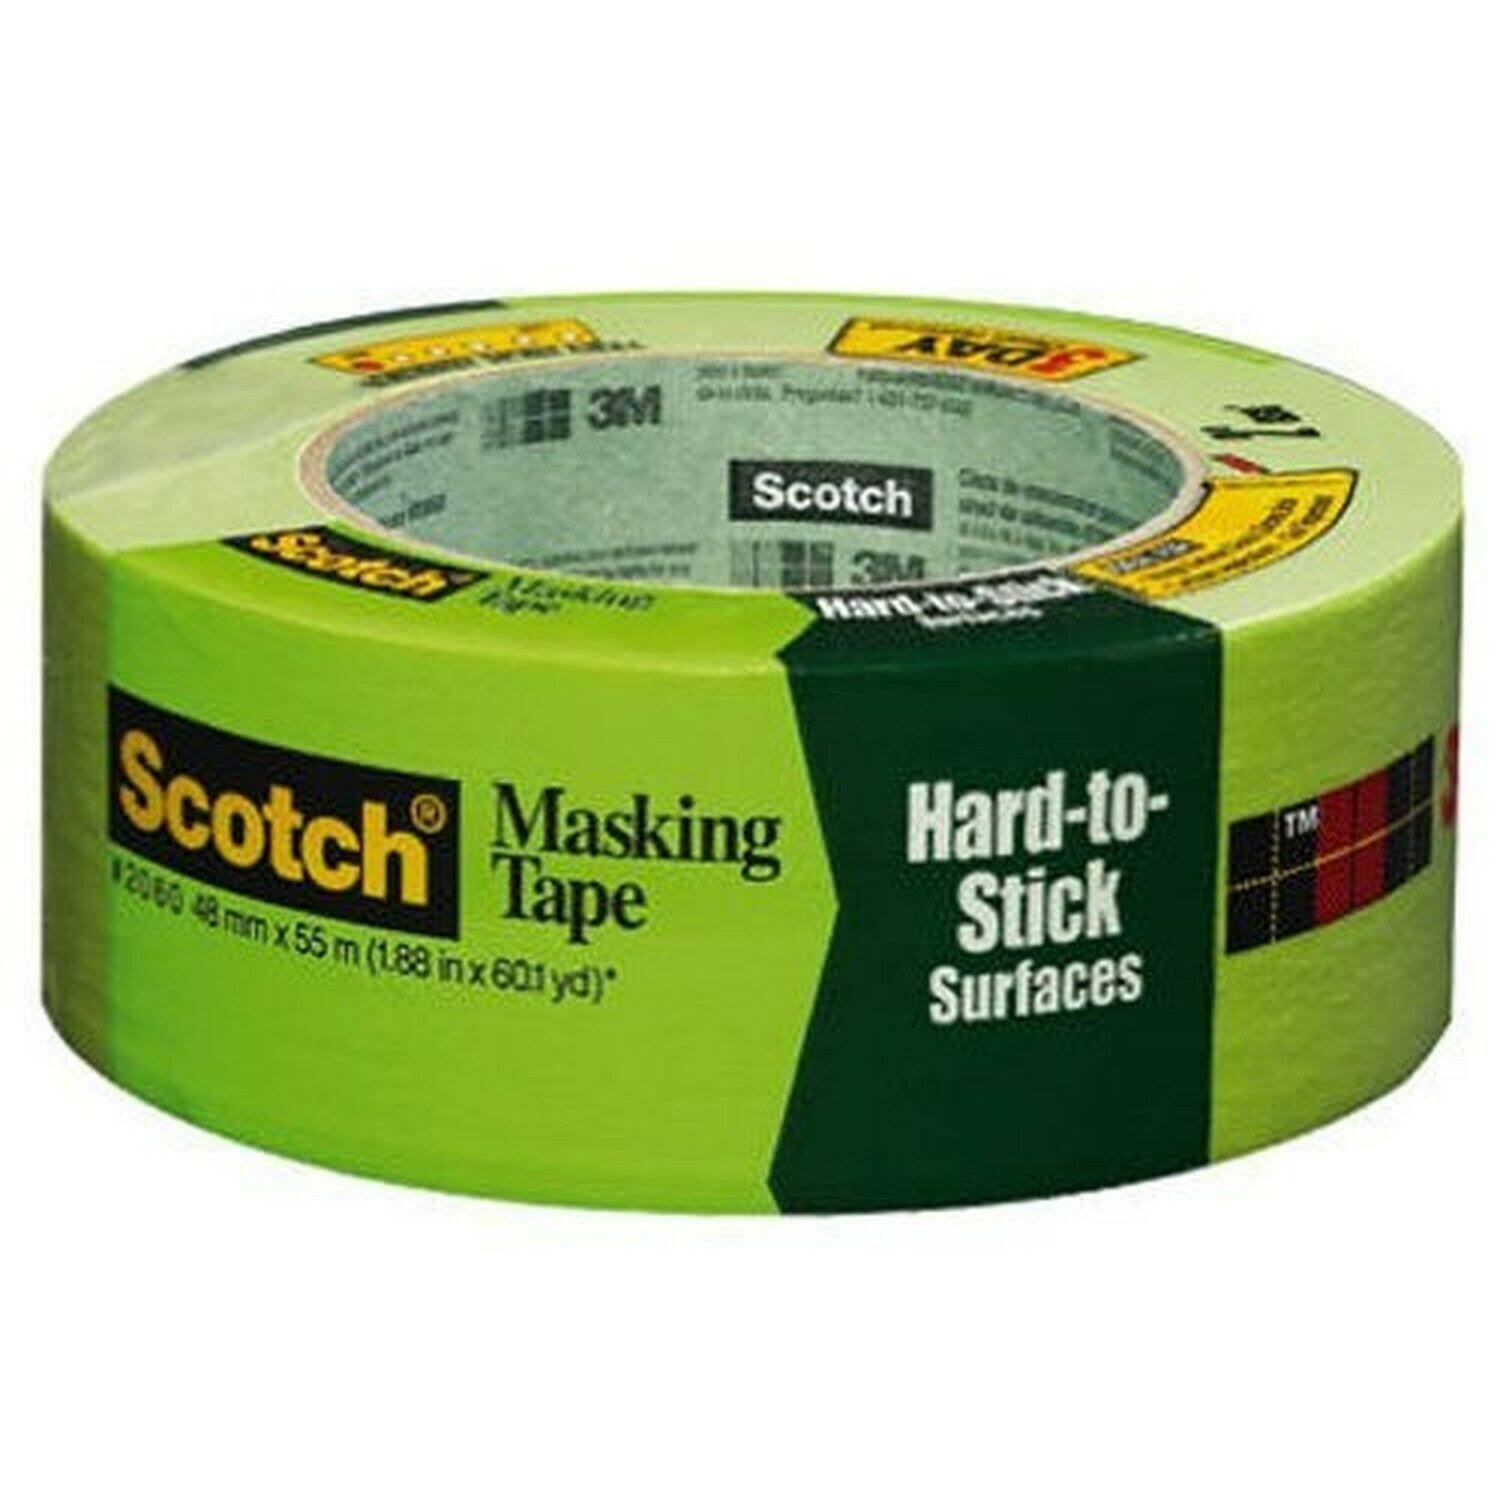 Scotch Masking Tape - 48mmx55m